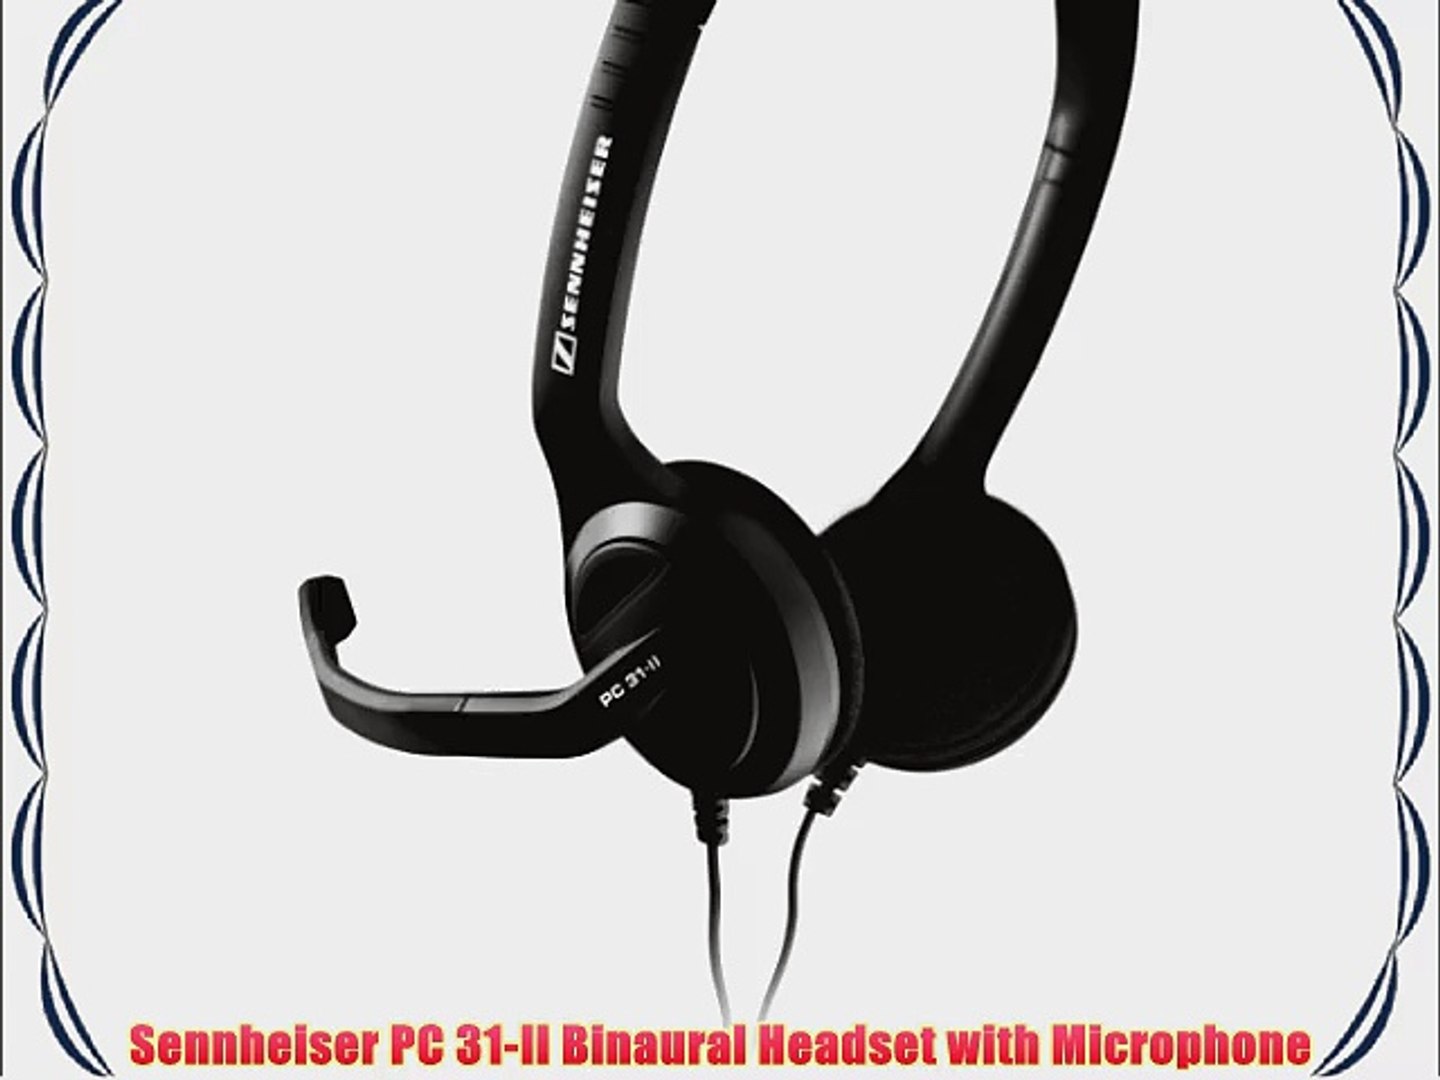 Sennheiser PC 31-II Binaural Headset with Microphone - video ...